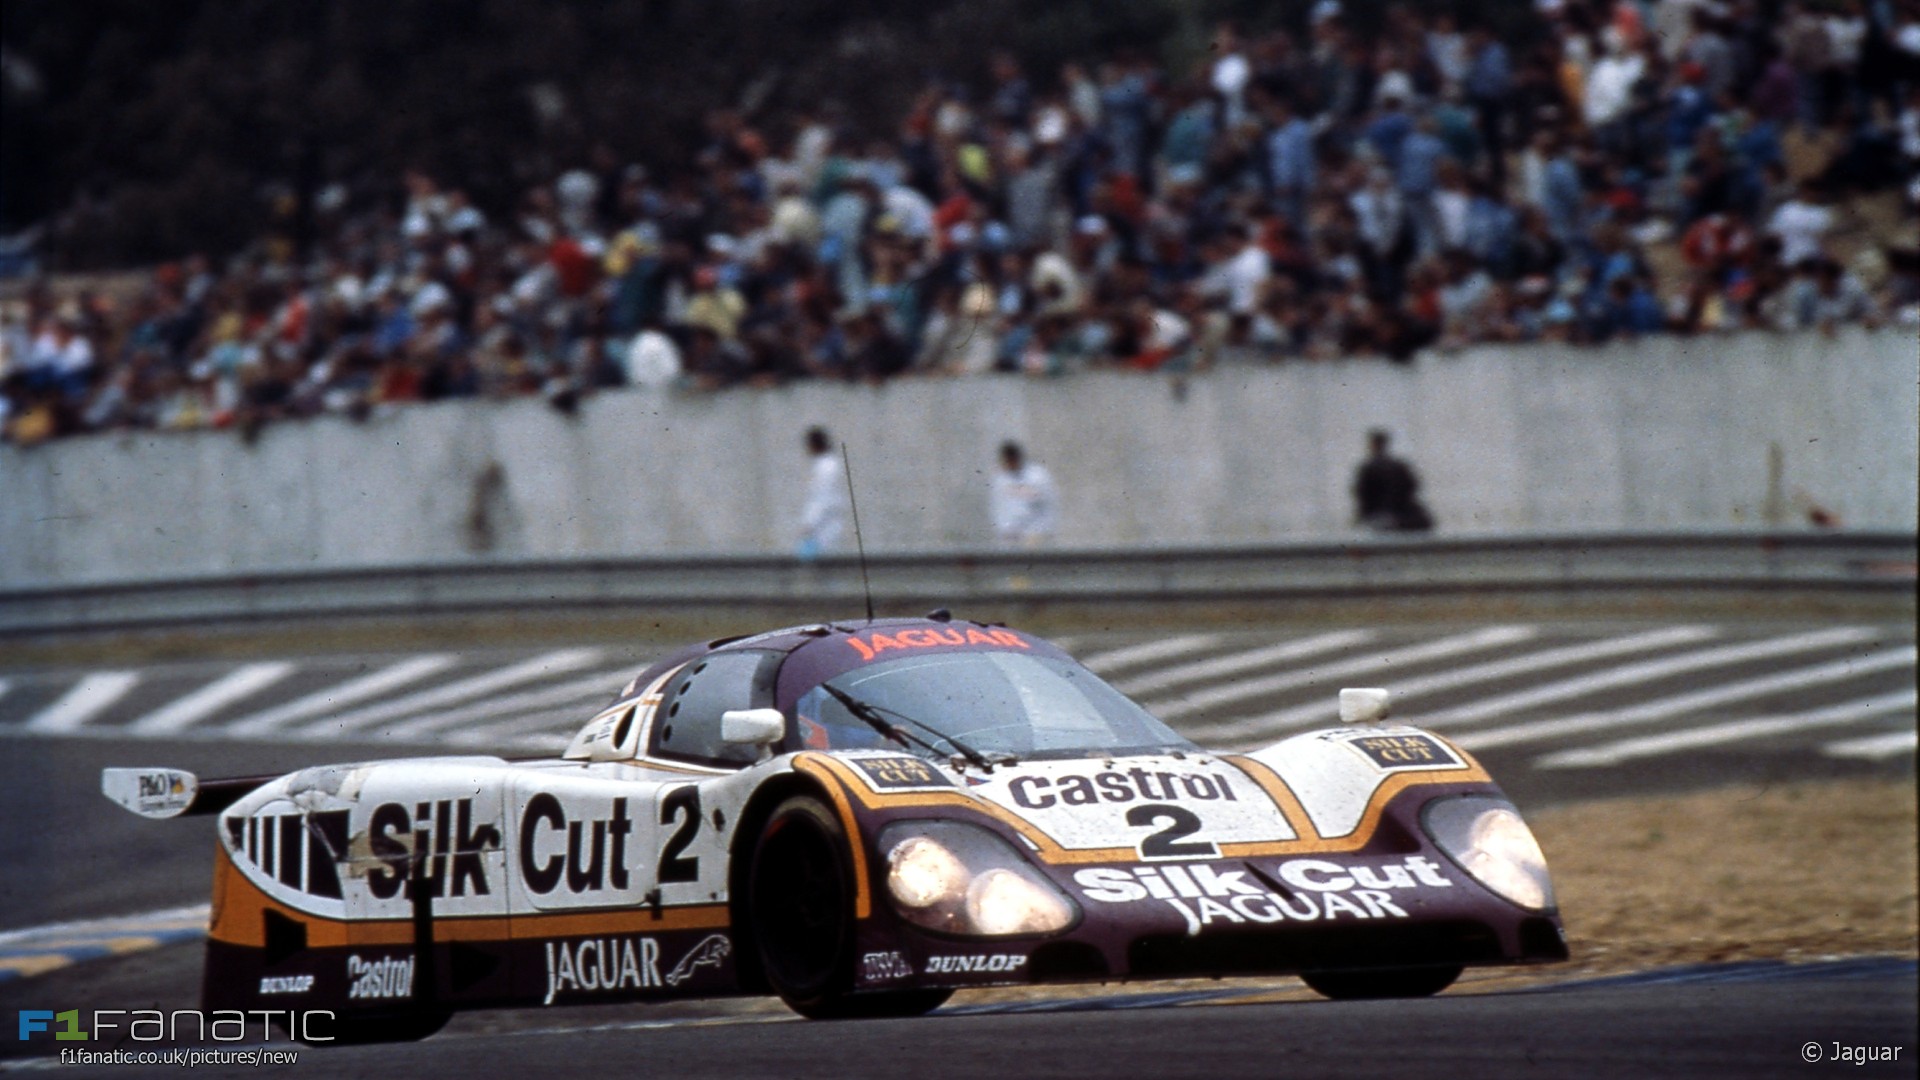 Jaguar XJR-9, Circuit de la Sarthe, Le Mans 24 Hours, 1988